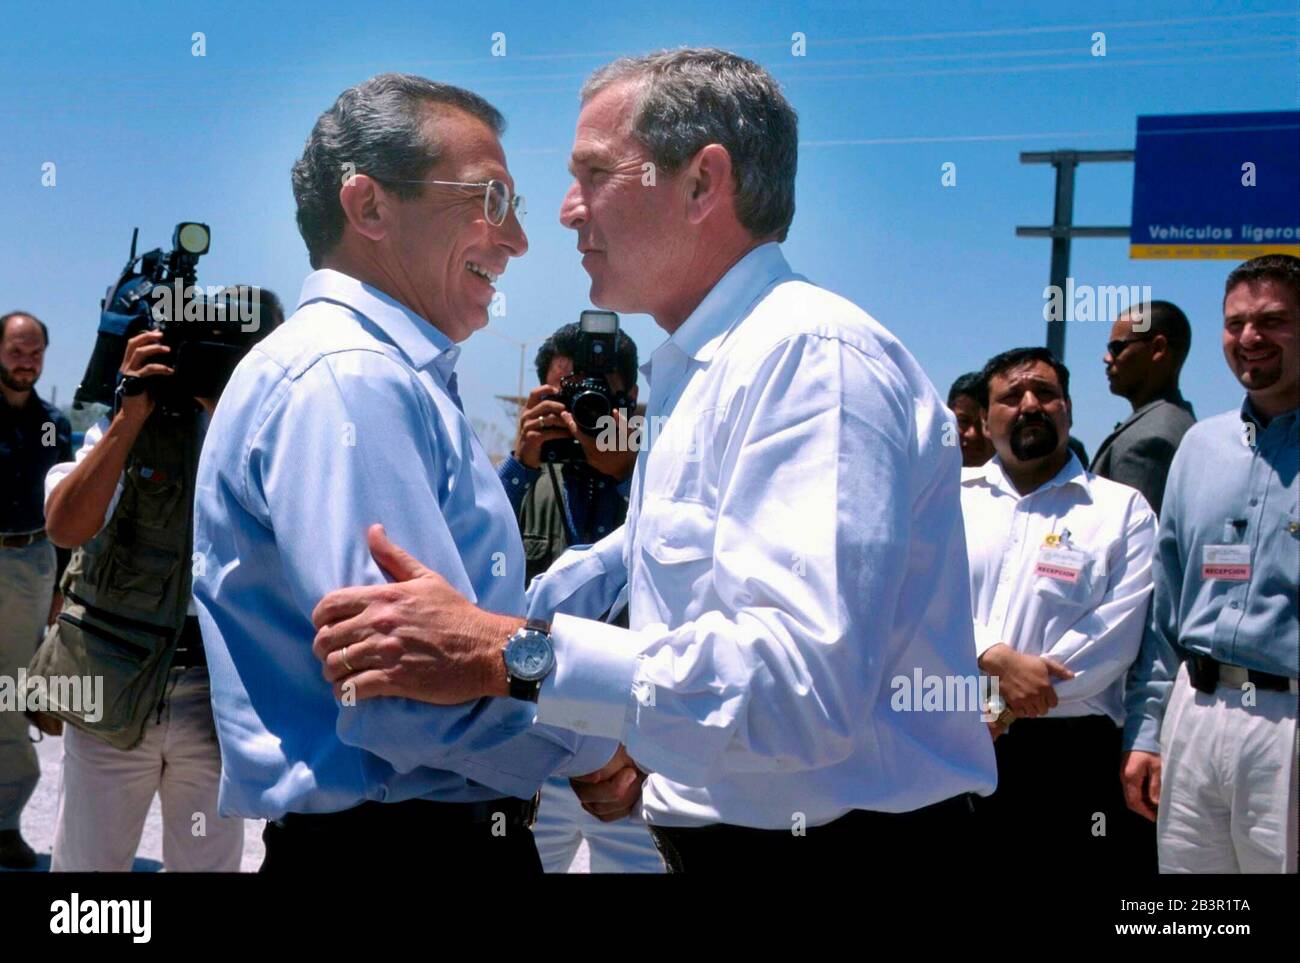 Nuevo Laredo, Tamaulipas, Mexique 24APR00: Le président Ernesto Zedillo, du Mexique, rencontre le candidat présidentiel américain George W. Bush, gouverneur du Texas, au pont du commerce mondial au-dessus de la rivière Rio Grande à l'ouest de Laredo, au Texas.Bush et Zedillo se sont réunis pour consacrer le nouveau pont et parler de questions commerciales dans le cadre d'une conférence privée.©Bob Daemmrich Banque D'Images